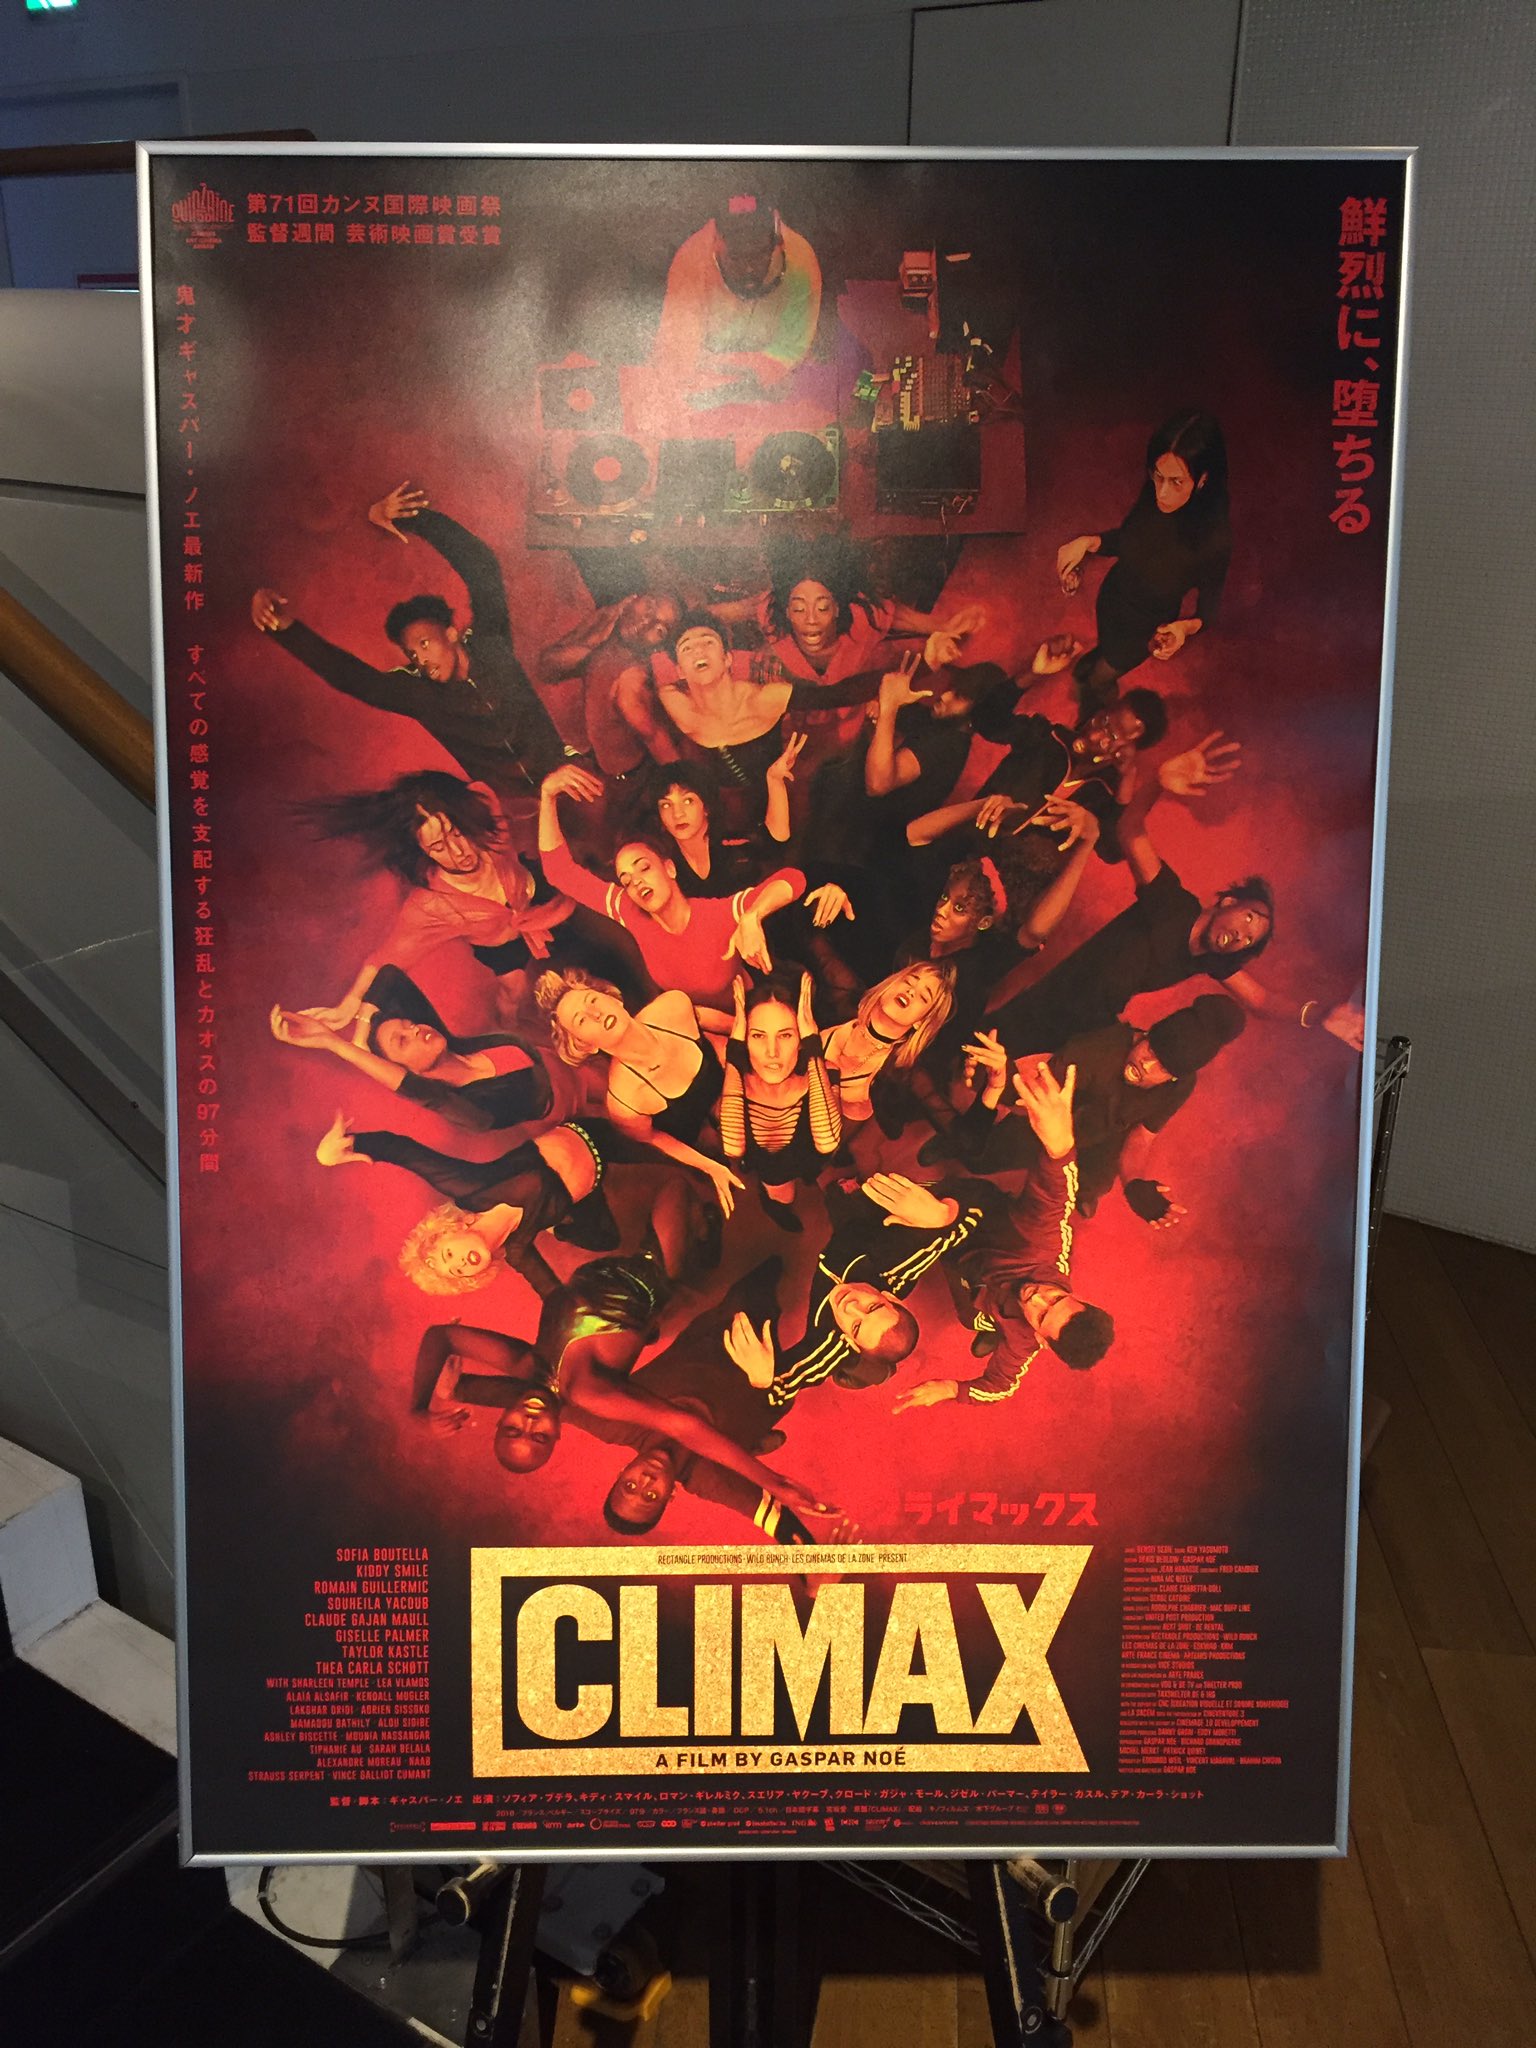 ぼなぺてぃ 日本最速上映会 Climax ギャスパー ノエ 前半だけで軽く3回はイッた そしてのちに地獄をみた 阿鼻叫喚とはこのこと 史上最狂のダメ ゼッタイ 映画 Climax 500億点でした サイコーーーーーーーーーーーーーー